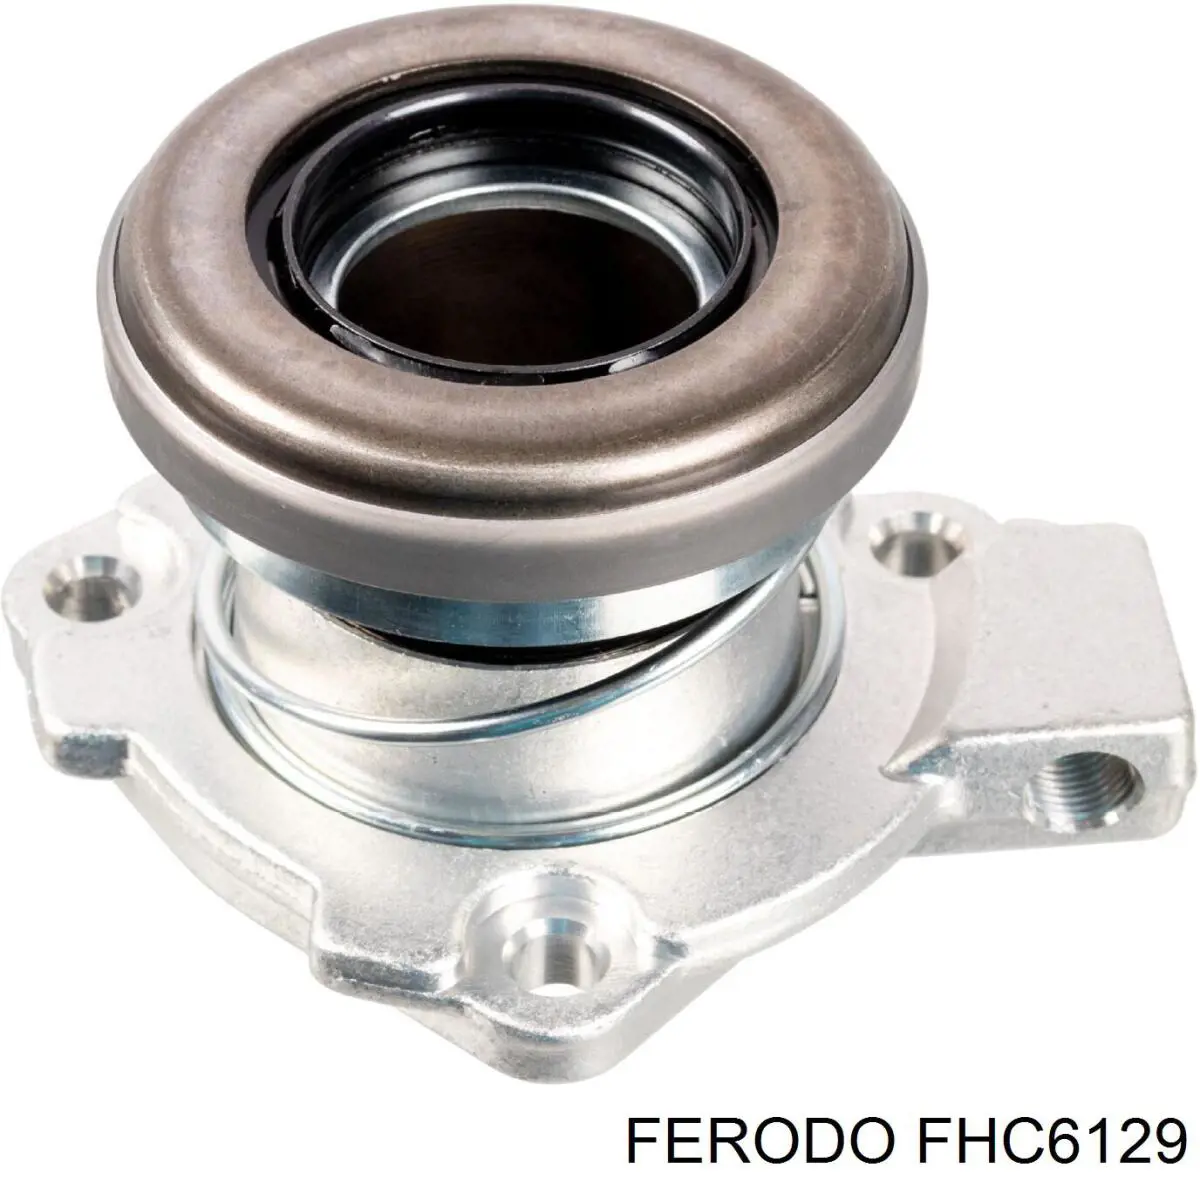 FHC6129 Ferodo рабочий цилиндр сцепления в сборе с выжимным подшипником